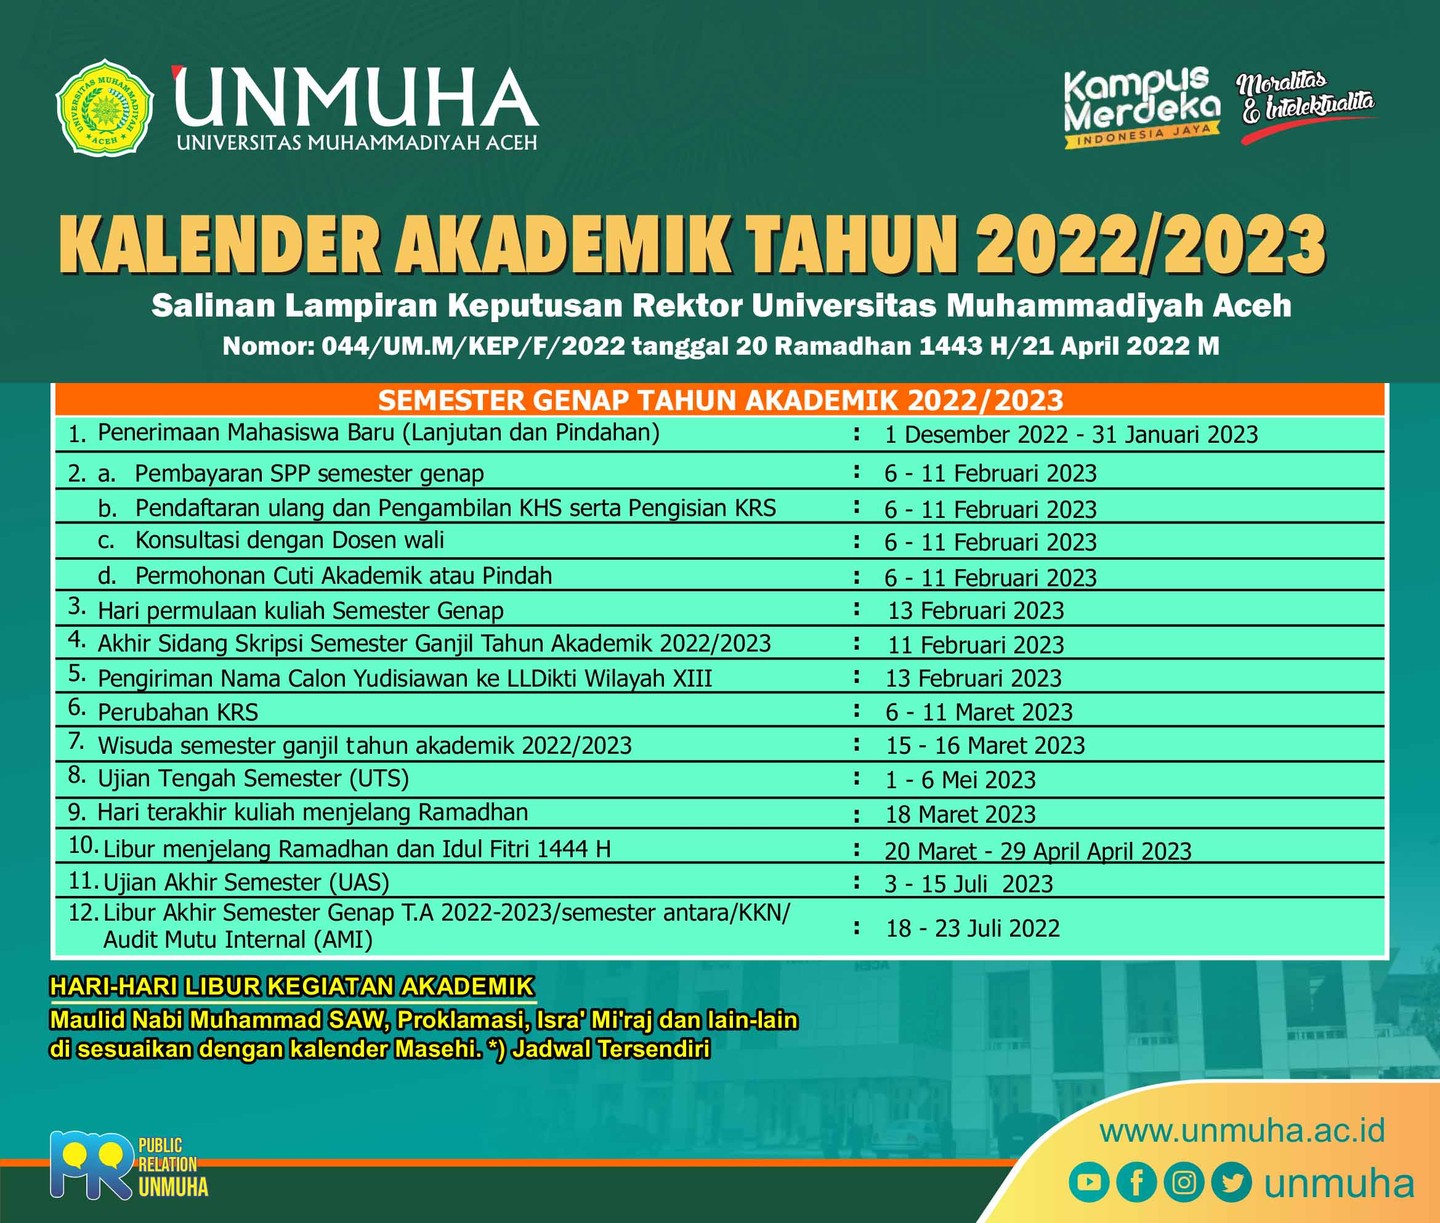 Assalamu'alaikum wr.wb,
Diberitahukan kepada seluruh mahasiswa Fakultas Vokasi Universitas Muhammadiyah Aceh (UNMUHA), berikut ini kami sampaikan bahwa untuk kegiatan Semester Genap Tahun Akademik 2022/2023, mulai dari pembayaran SPP, Pendaftaran Ulang, Pengambilan KHS, Pengisian KRS, Konsultasi dengan Dosen Wali akan dimulai tanggal 6 s.d 11 Februari 2023. Hari Permulaan Kuliah Semester Genap akan dilaksanakan pada tanggal 13 Februari 2023. Untuk kelancaran pelaksanaan kegiatan Perkuliahan Semester Genap TA 2022/2023, diharapkan seluruh mahasiswa mematuhi dan melaksanakan sesuai dengan Kalender Akademik tersebut di atas. 
Demikian, terima kasih.
Wassalamu'alaikum wr. wb.